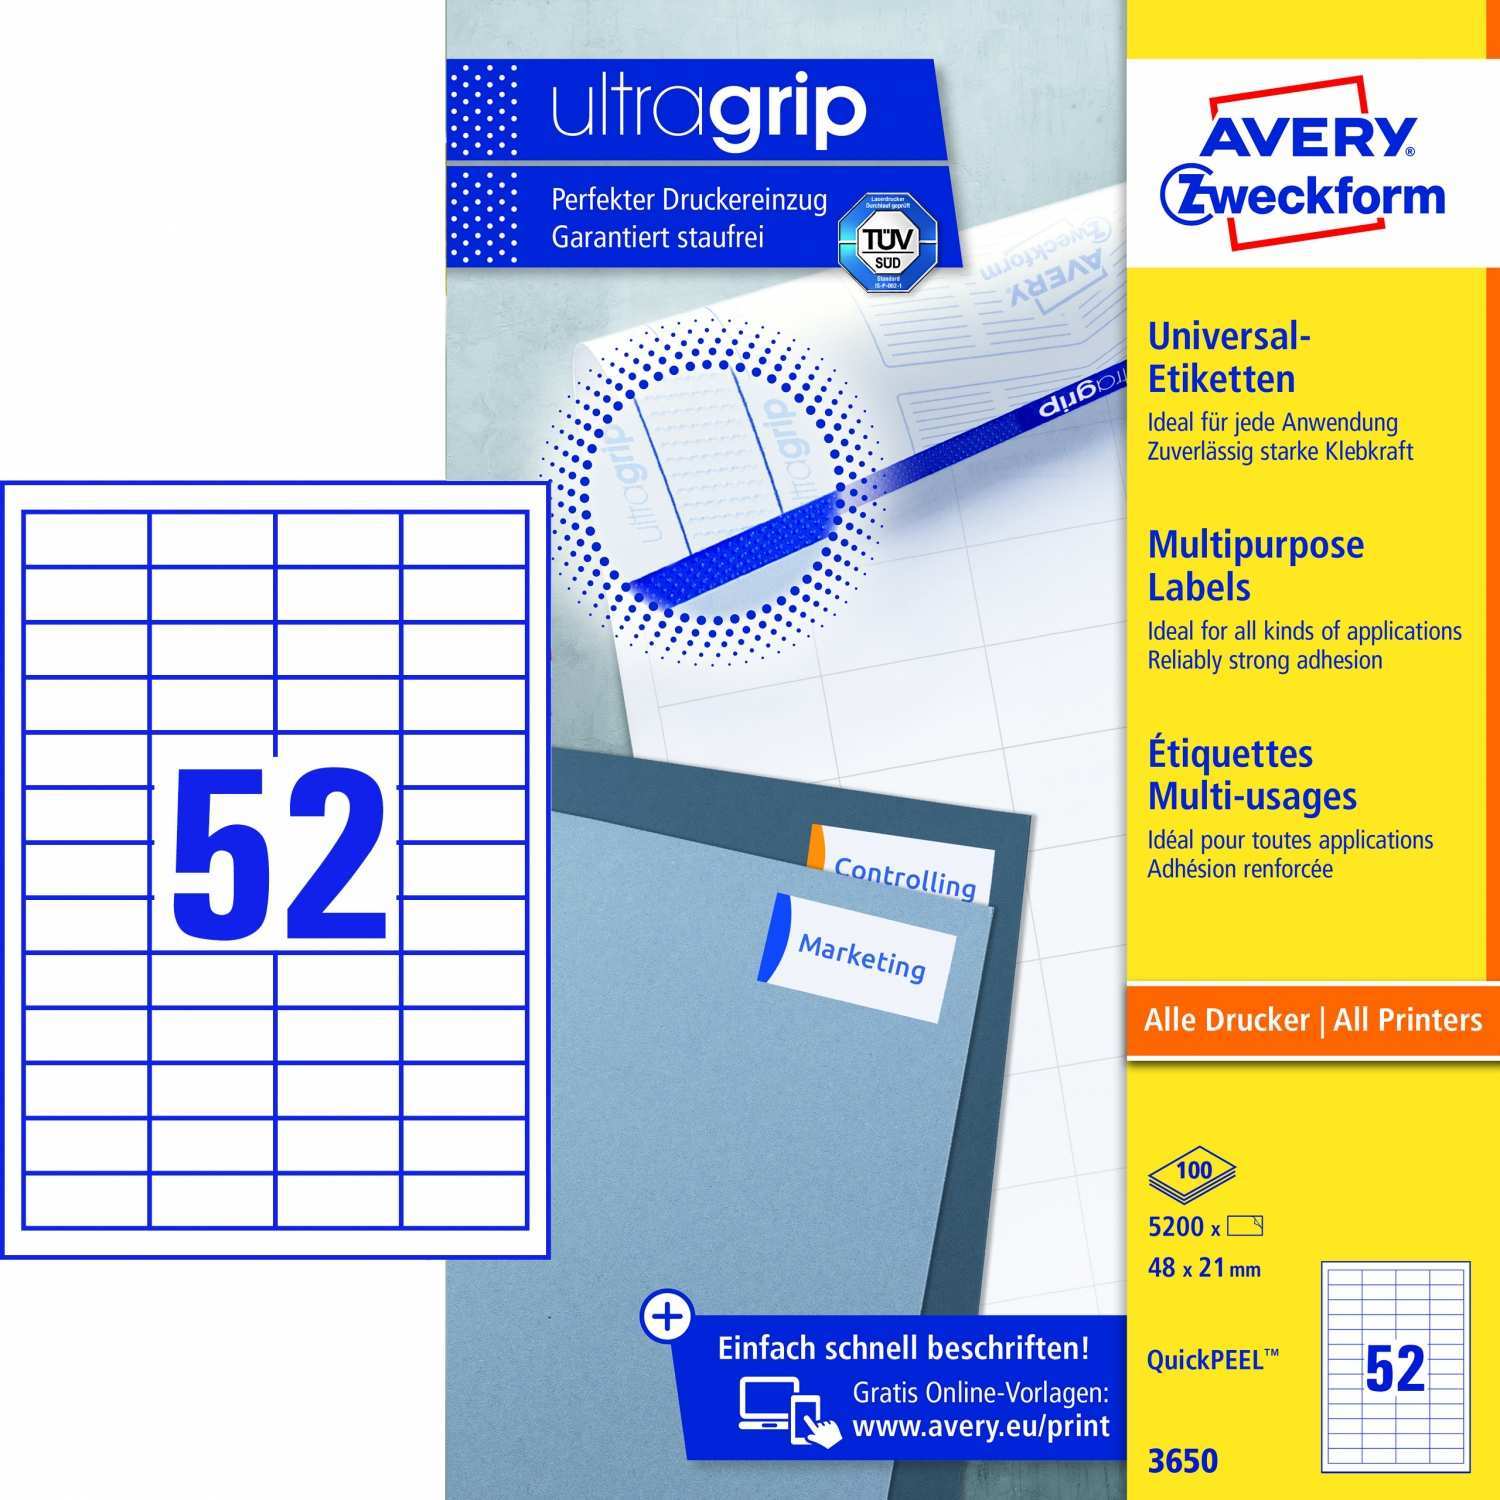 Avery Zweckform 3650 Universal Etiketten A4 Mit Ultragrip 48 X 21 Mm 100 Bogen 5 200 Etiketten Weiss Staples Burobedarf Schulartikel